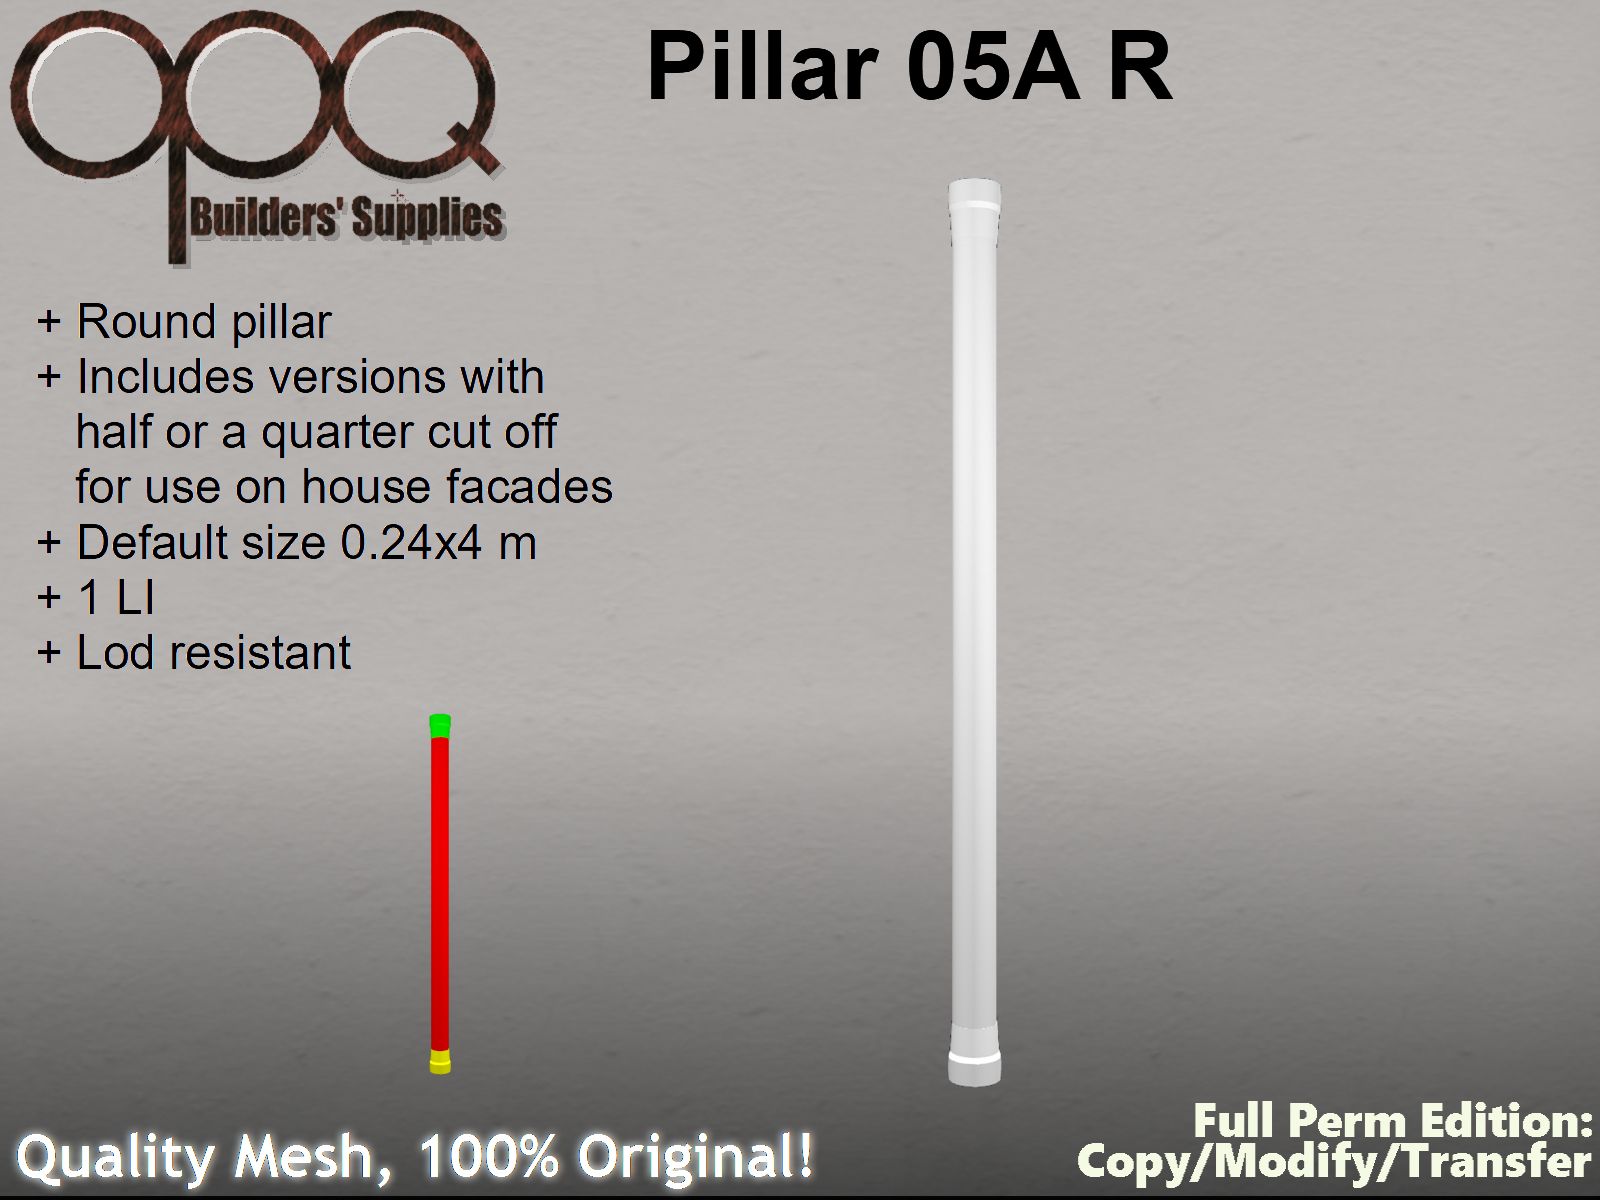 OPQ Pillar 05A R Poster.jpg